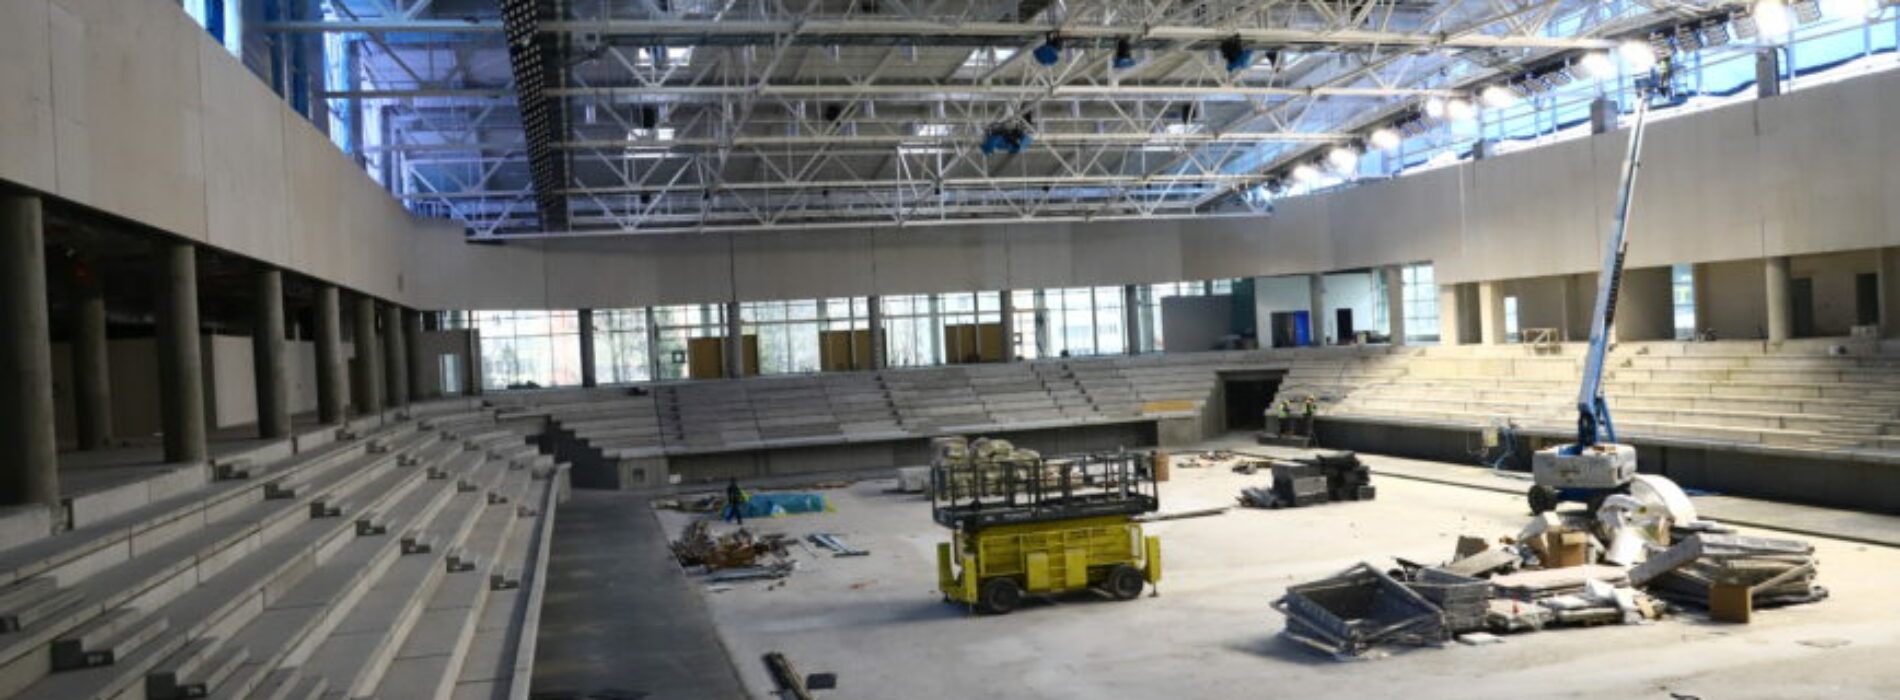 Styczniowy raport z budowy nowej hali sportowo-widowiskowej w Mielcu